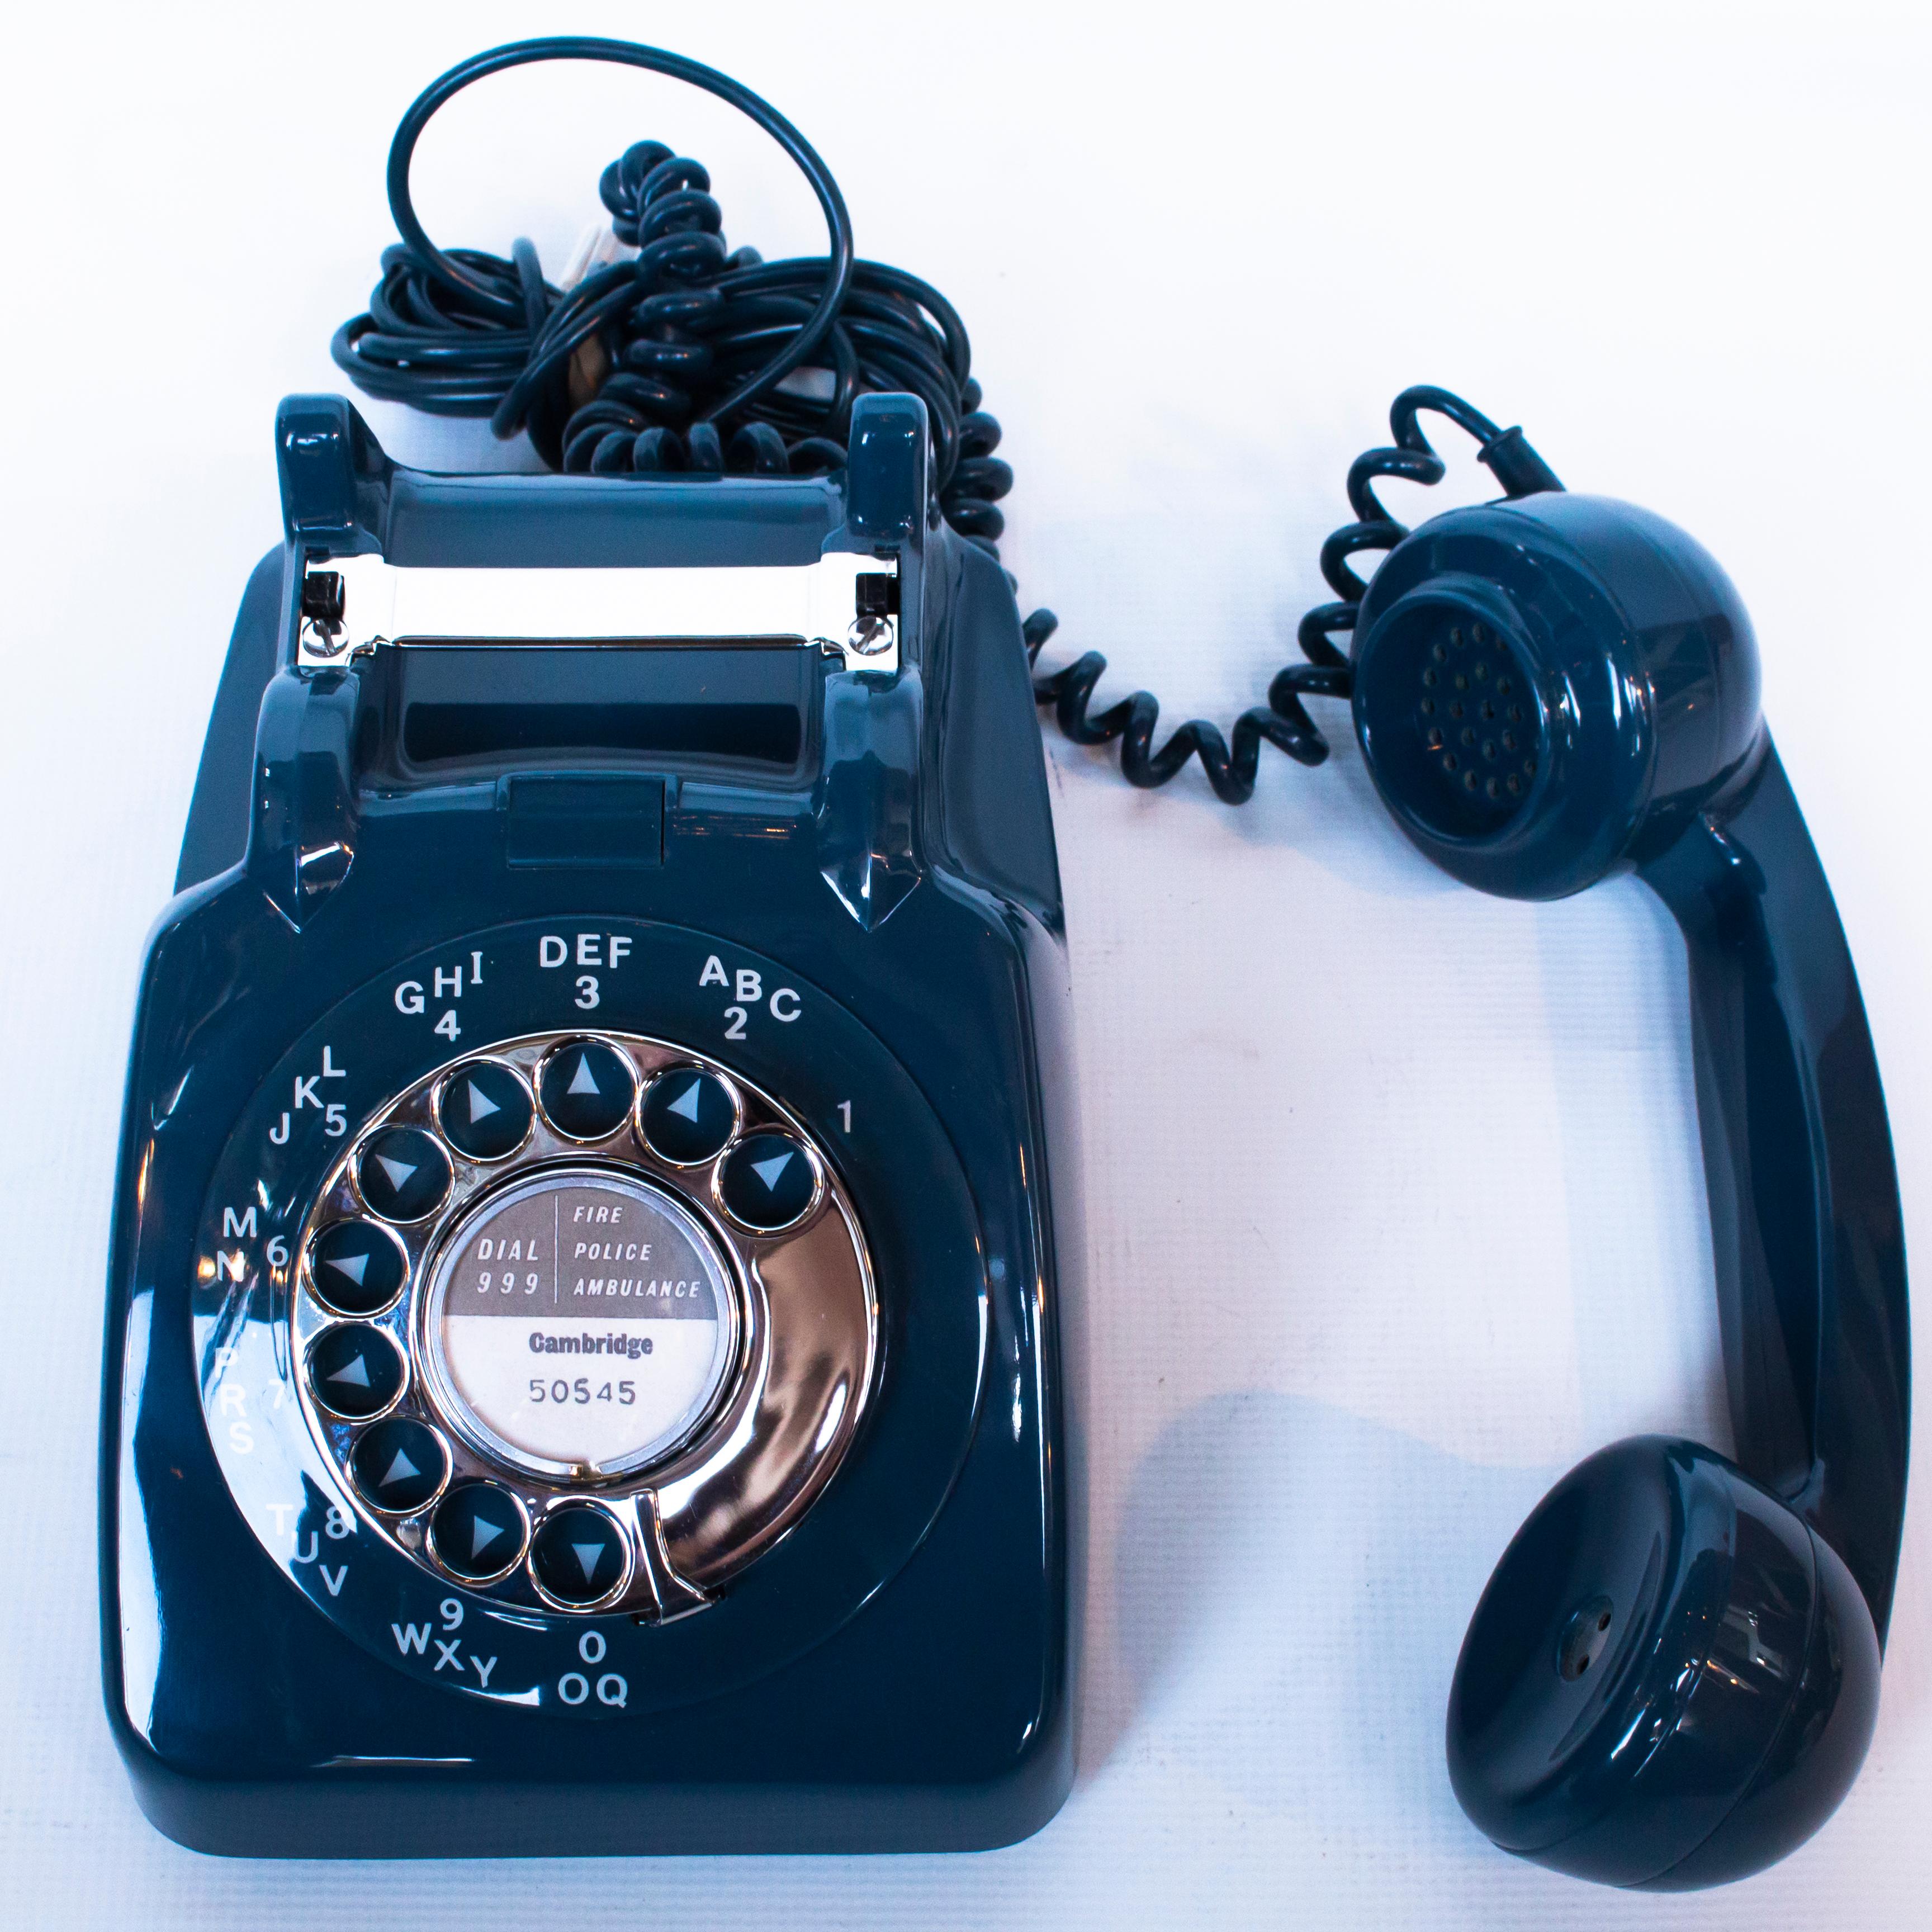 1963 telephone